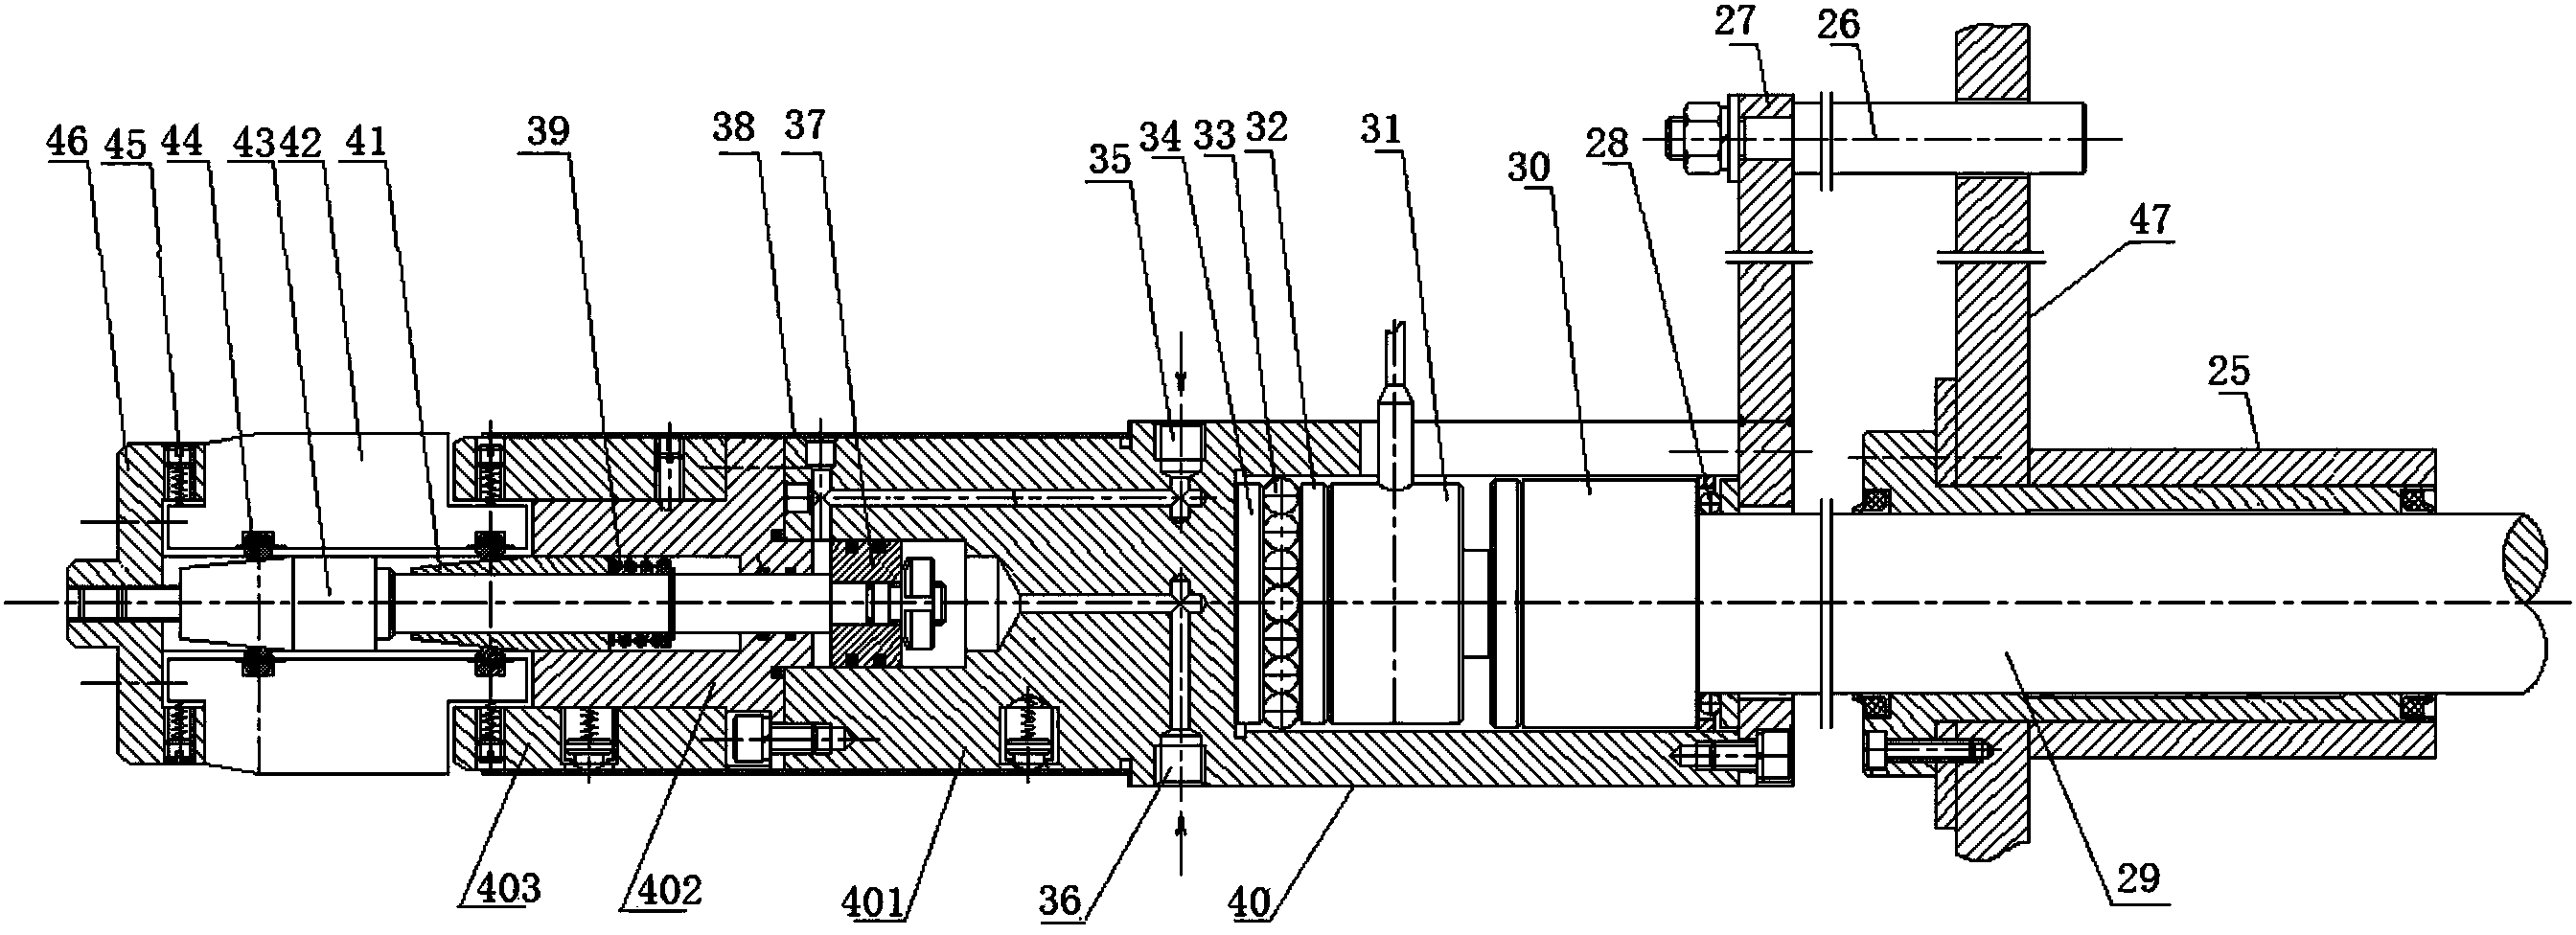 Engine cylinder liner press